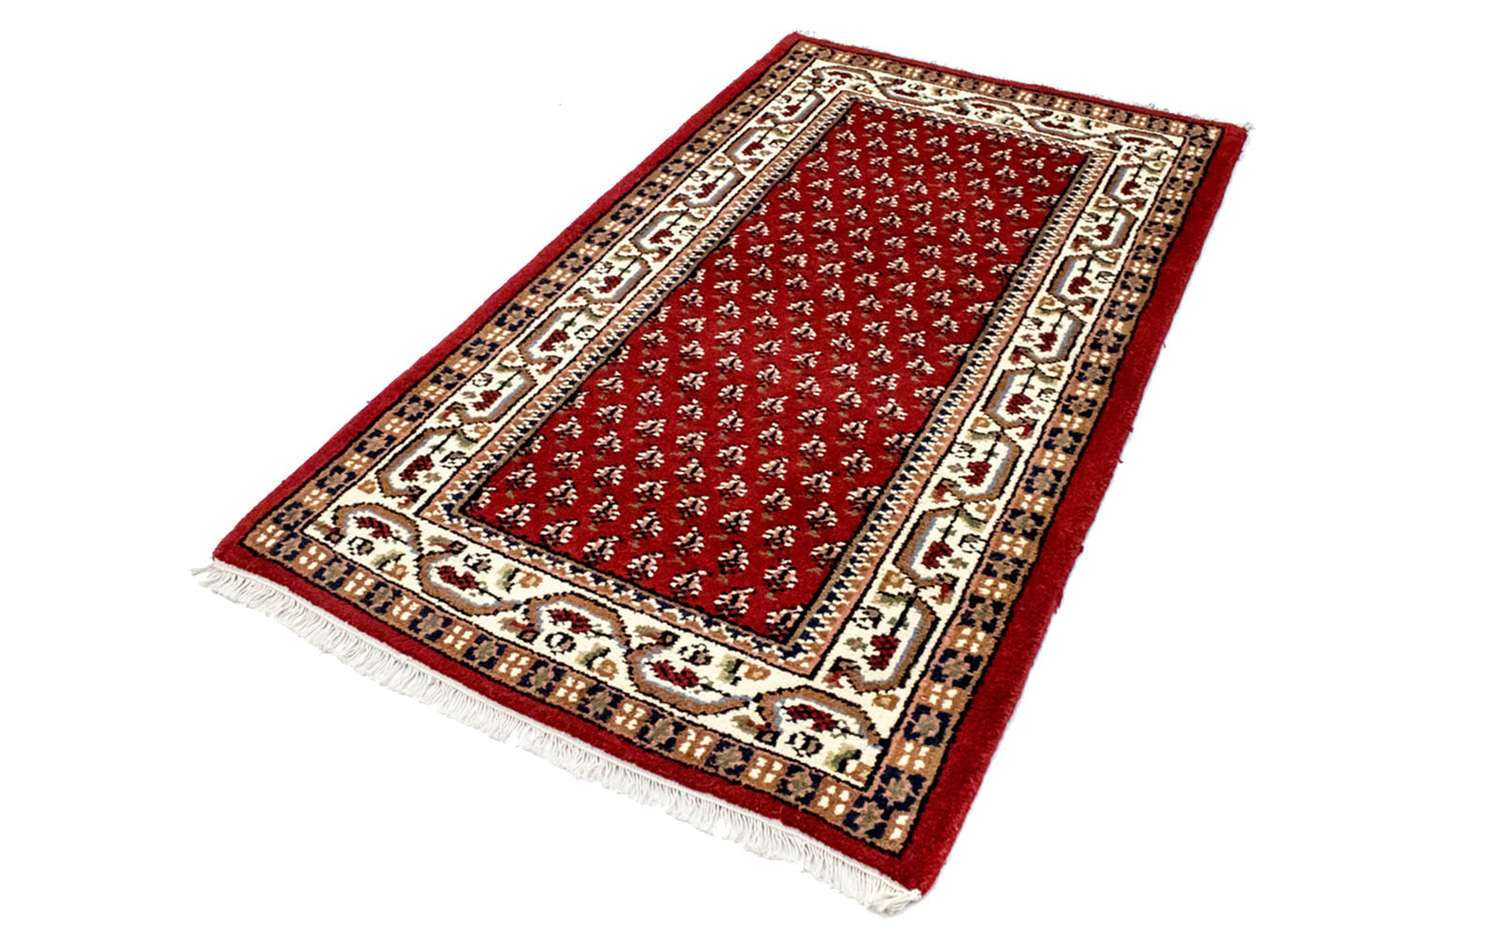 Orientalsk teppe - Mino - rektangulær